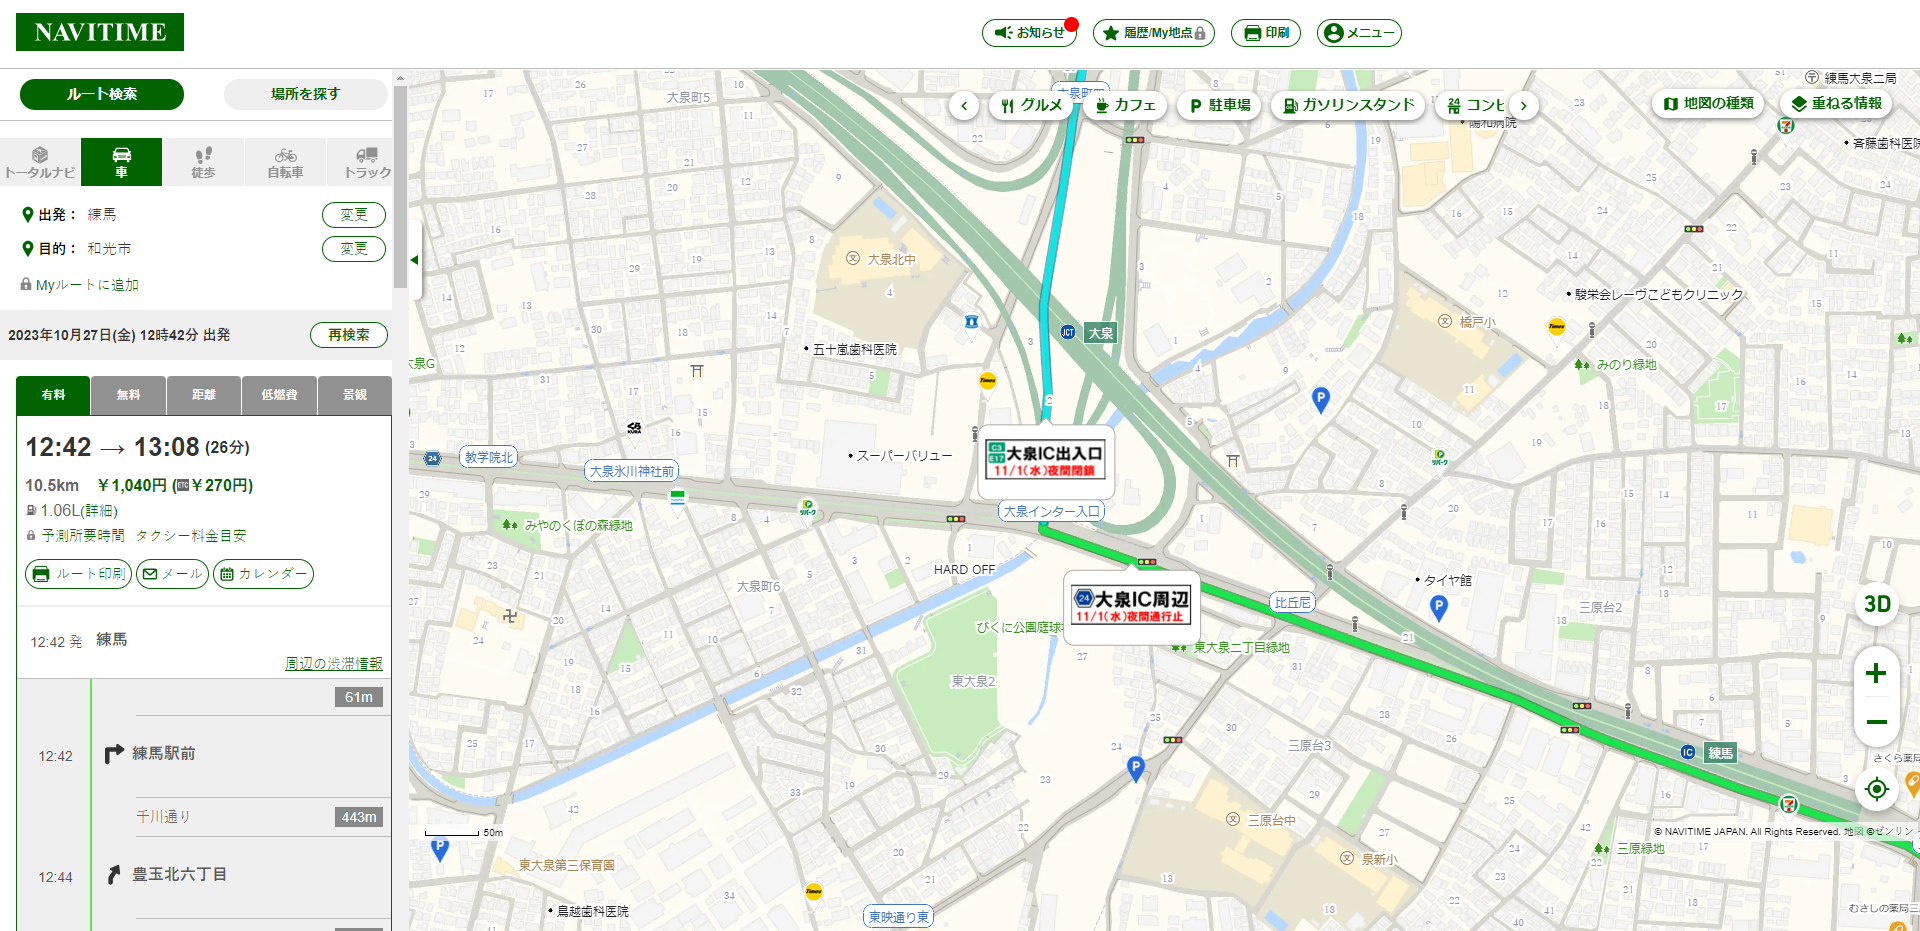 東日本高速道路株式会社のNAVITIMEでの高速道路工事告知画面